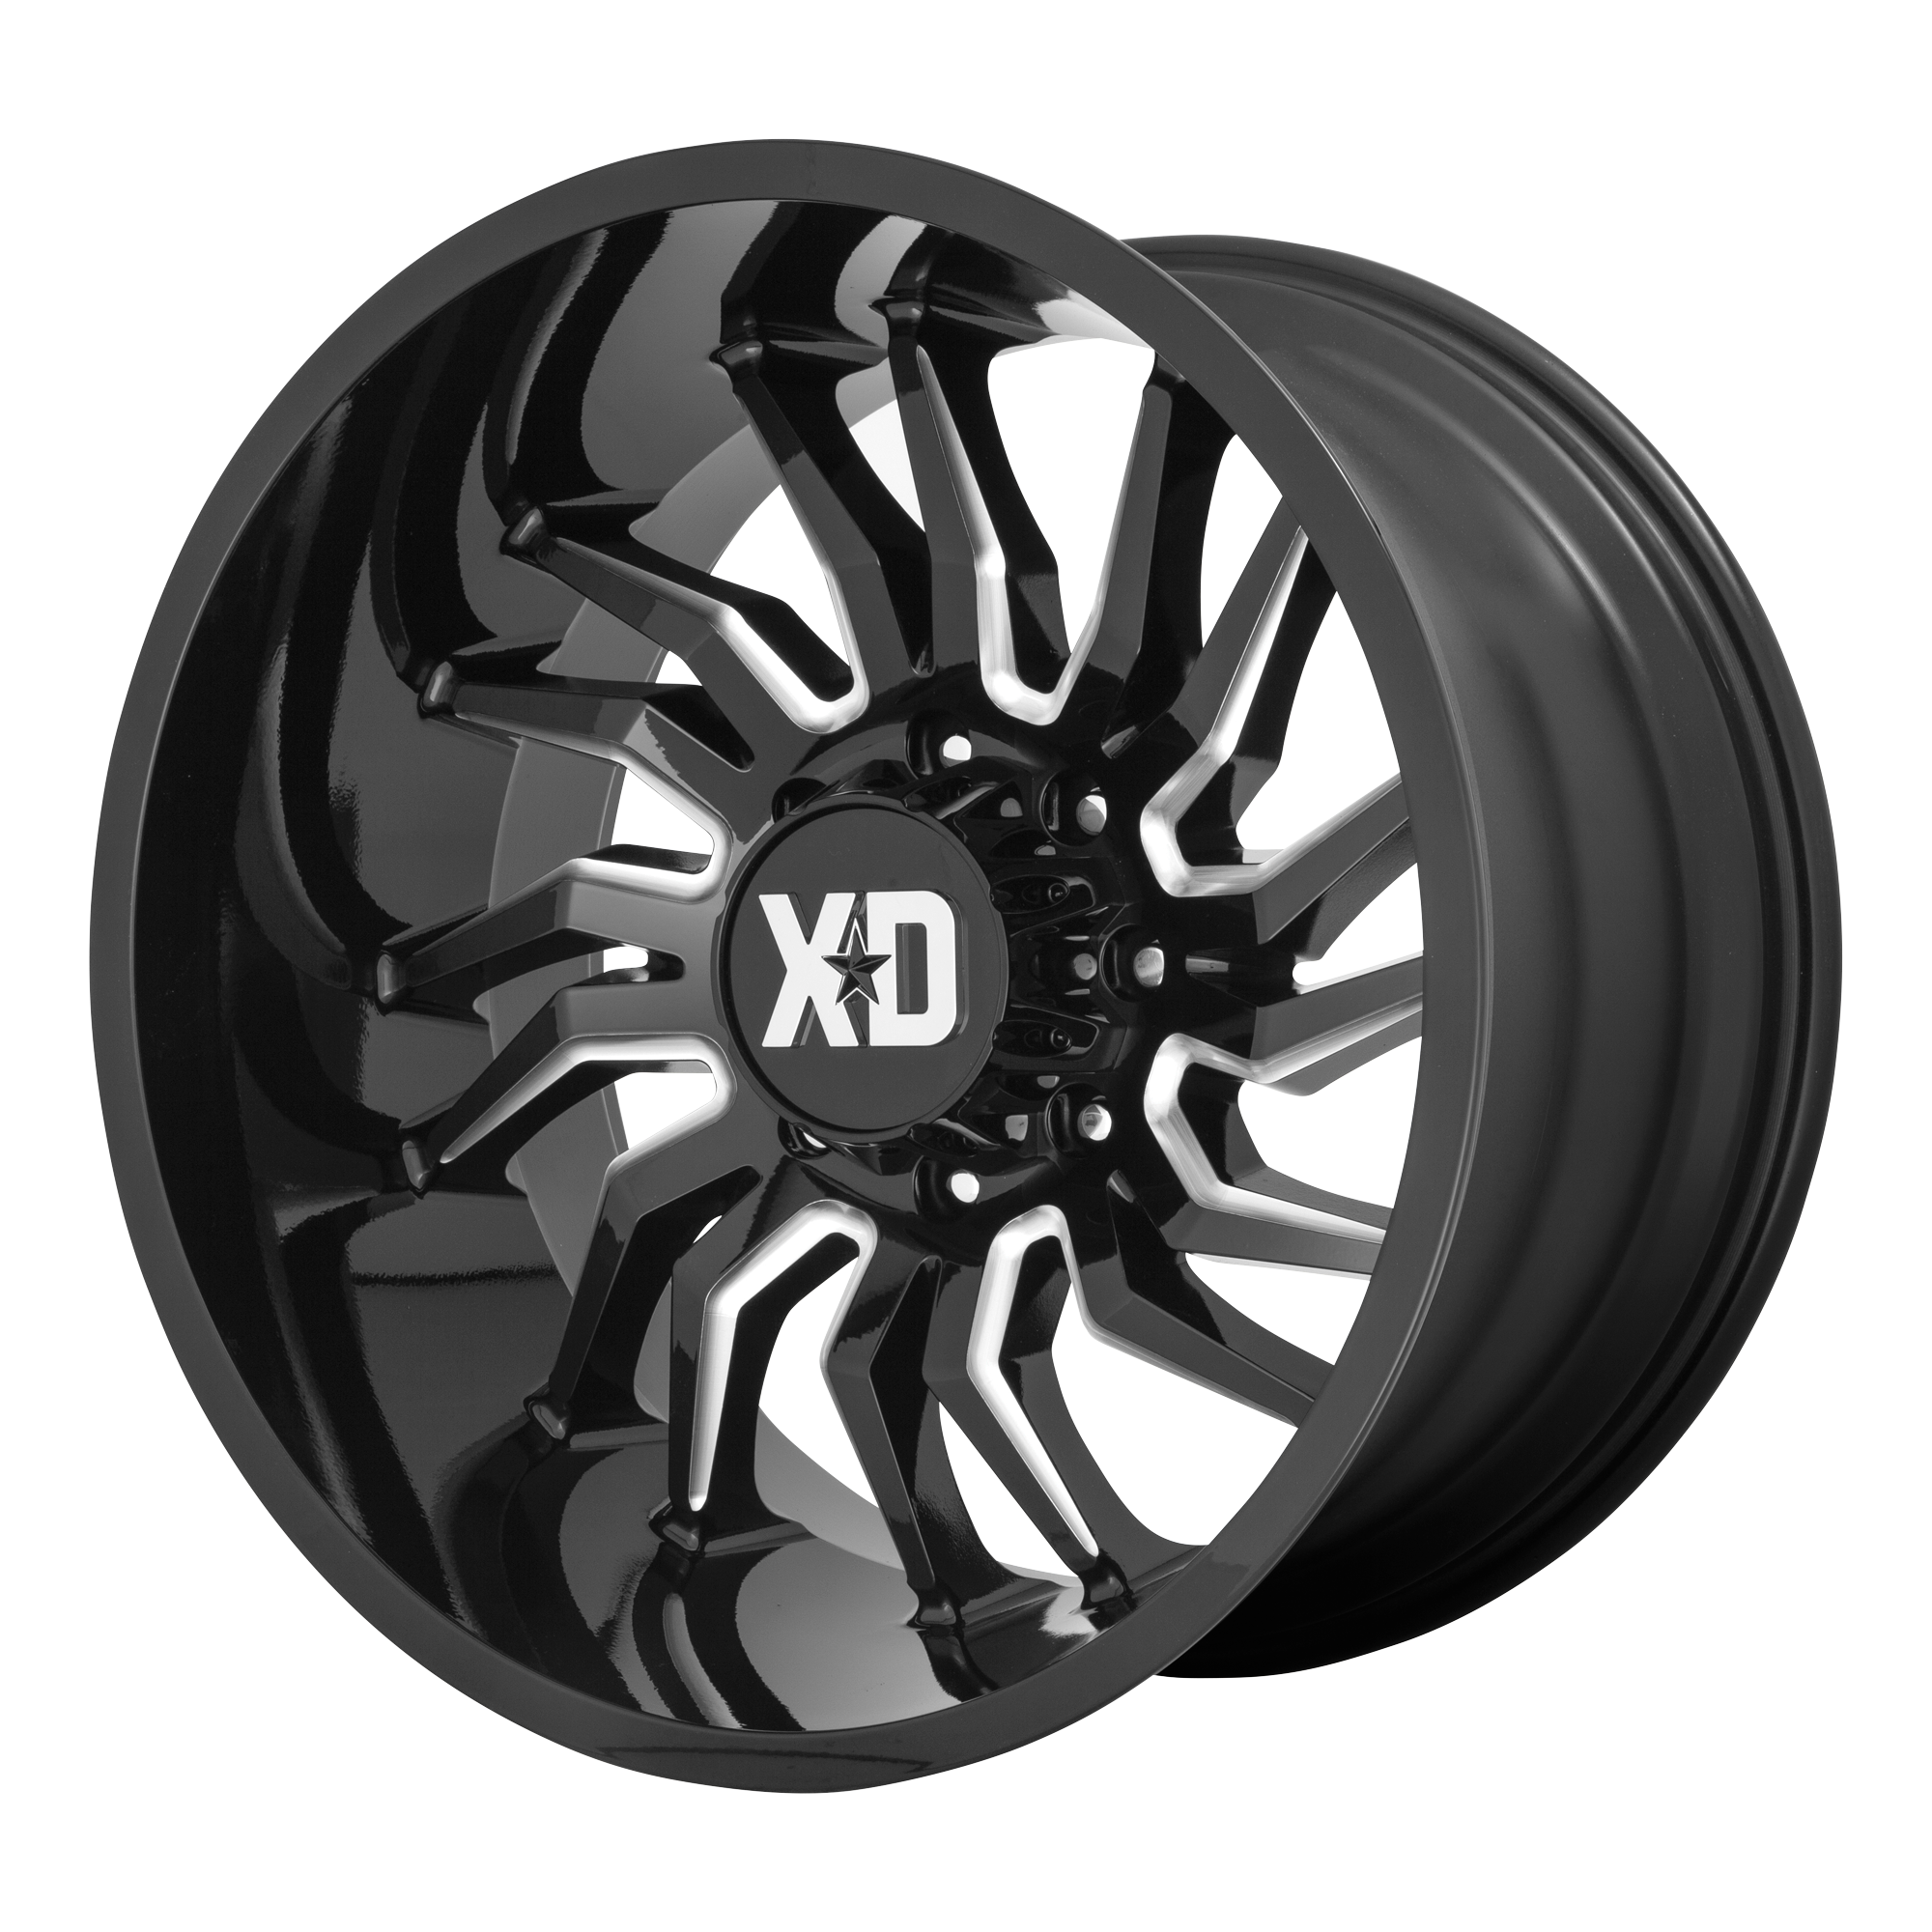 XD 22"x12" Non-Chrome Gloss Black Milled Custom Wheel ARSWCWXD85822287344N